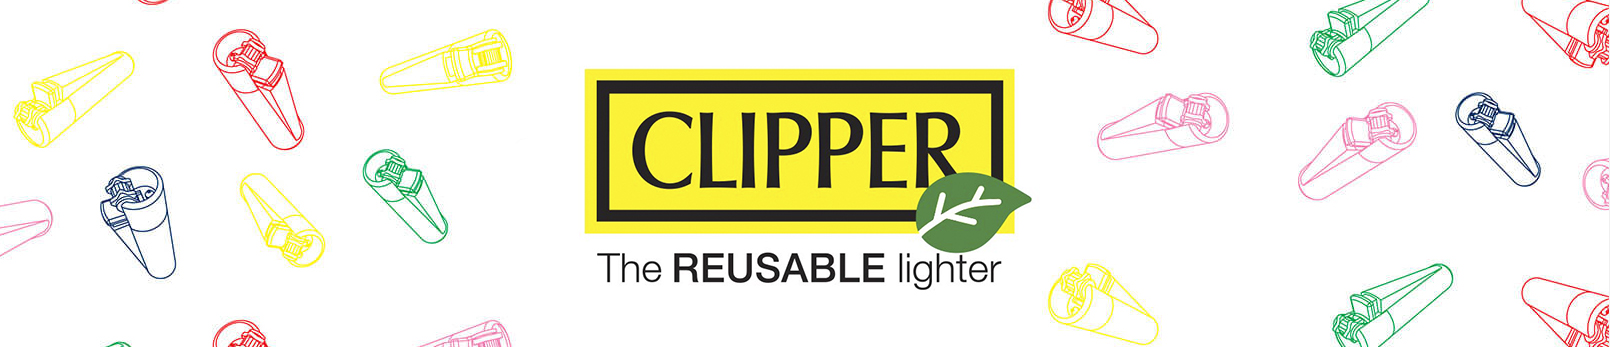 CLIPPER EXPOSITOR CP11 WILD ANIMALS (144PCS) en ALCON 100 - ACCESORIOS DE  FUMAR - Mecheros